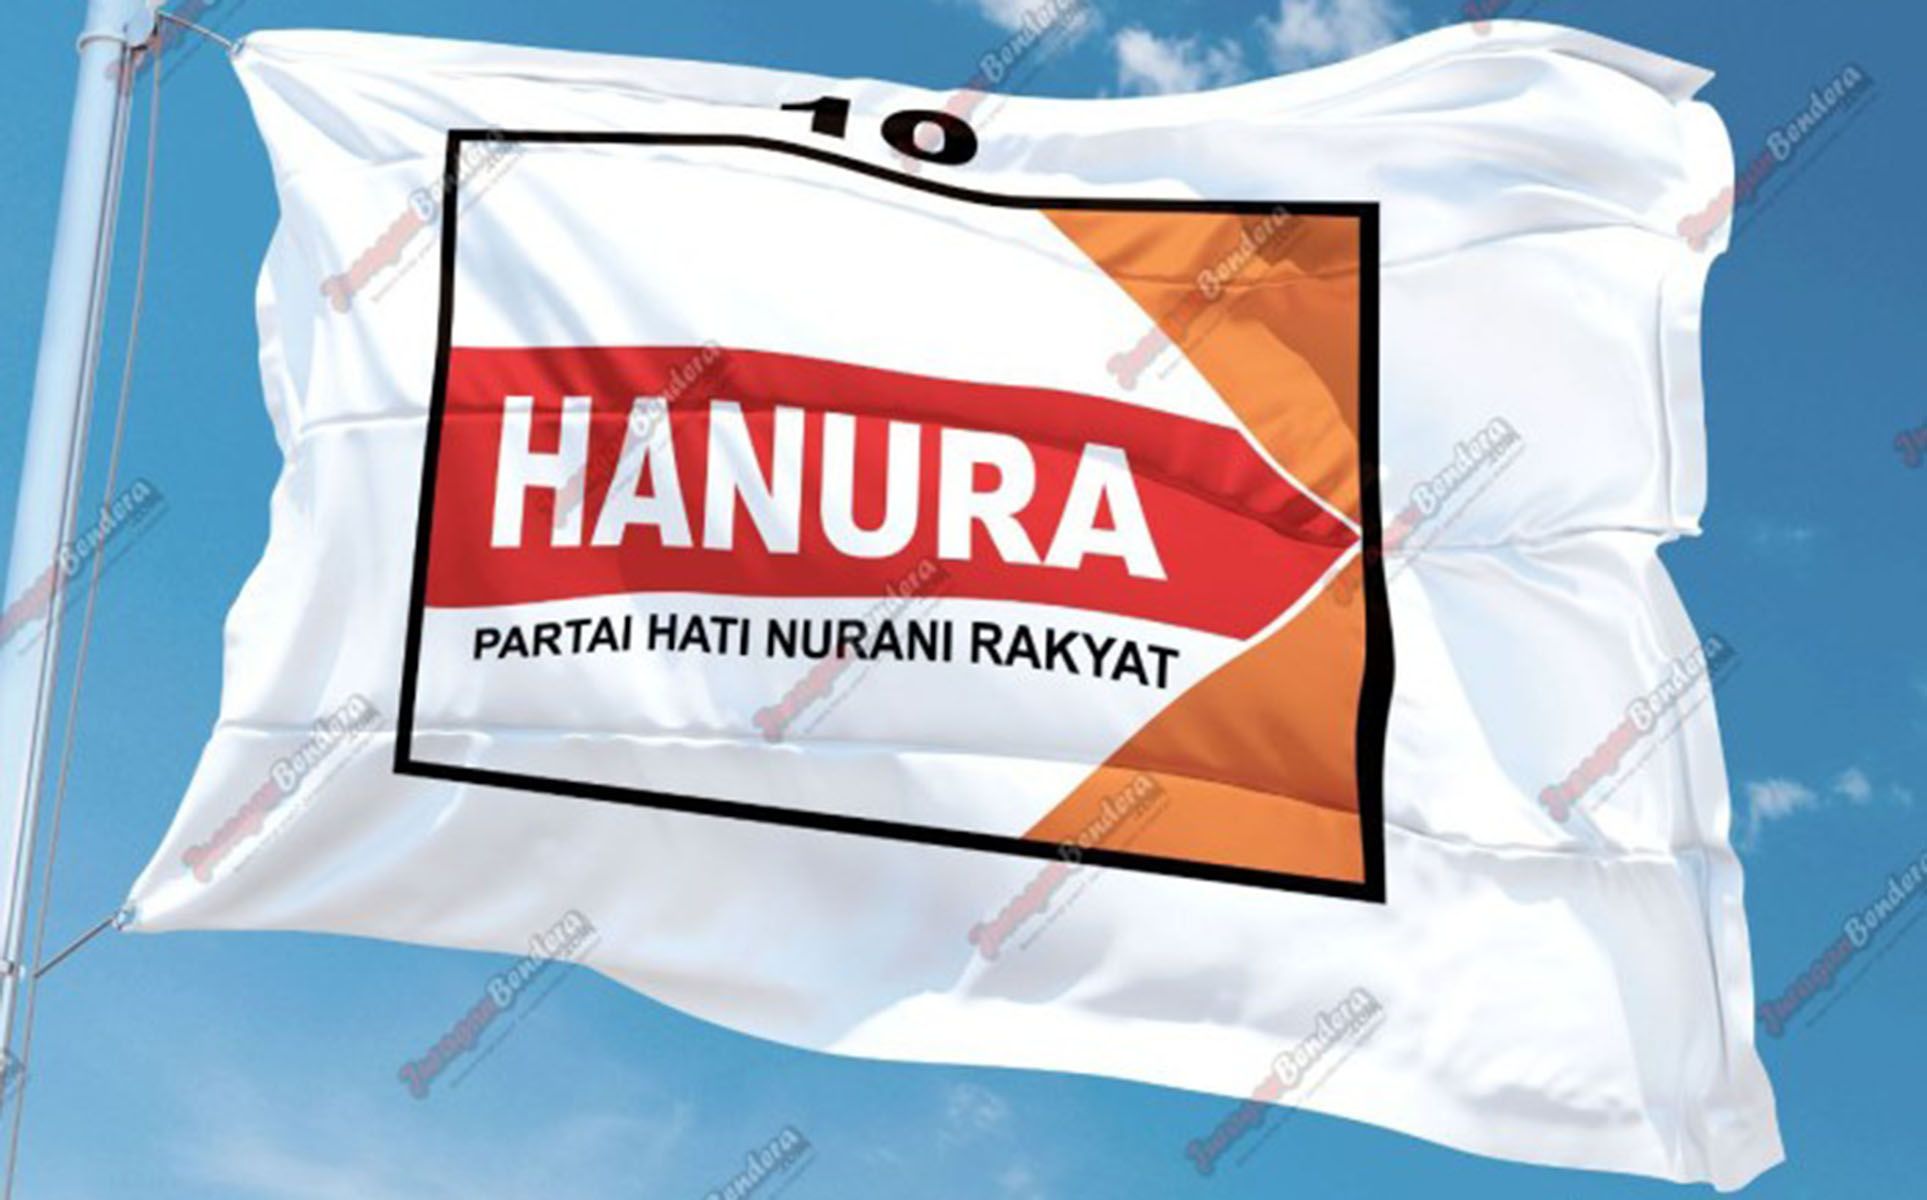 Bendera Partai Hati Nurani Rakyat (Hanura)